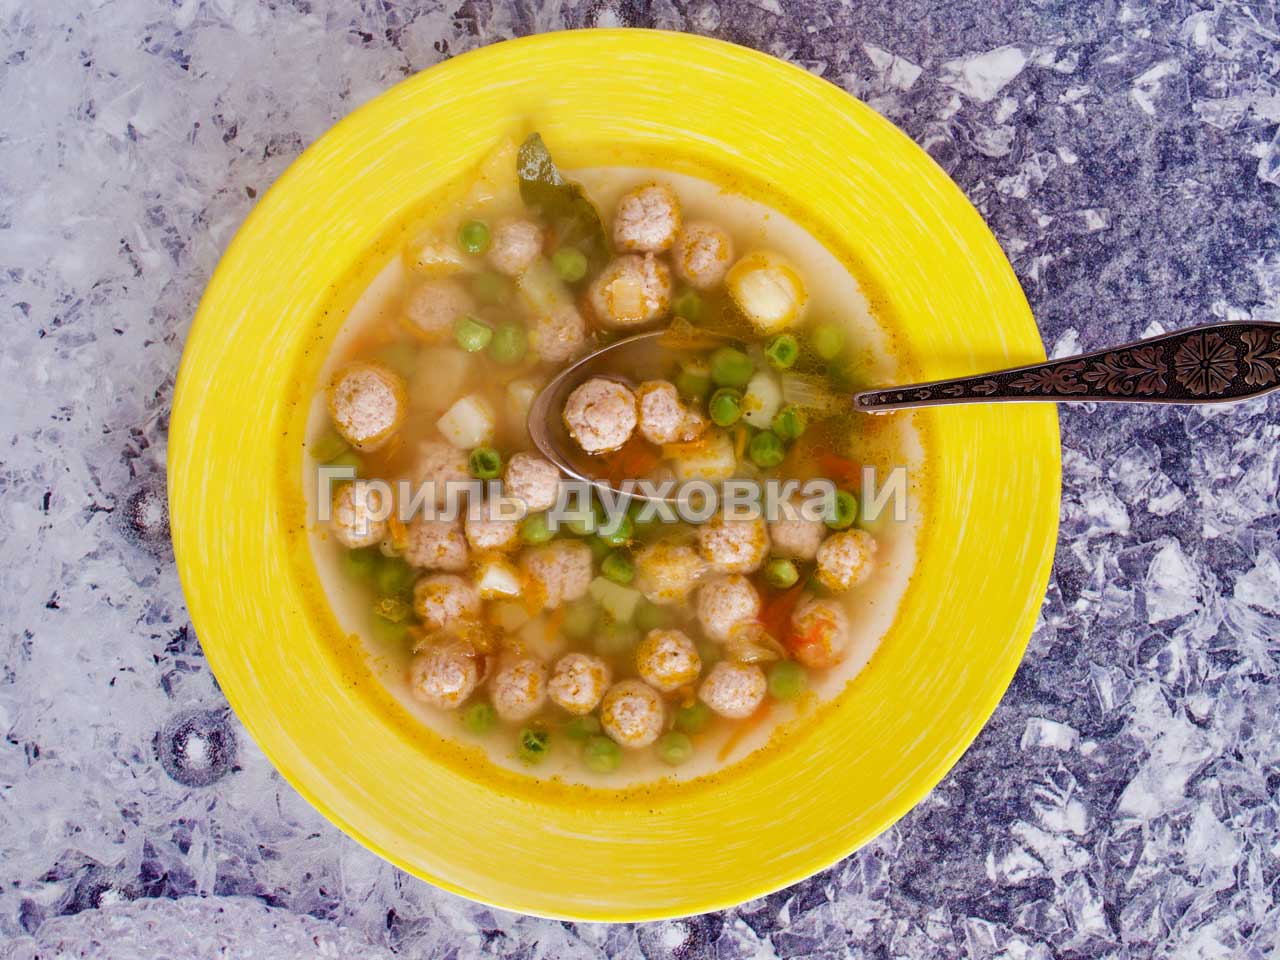 Фрикадельки для супа - пошаговый рецепт с фото на hb-crm.ru